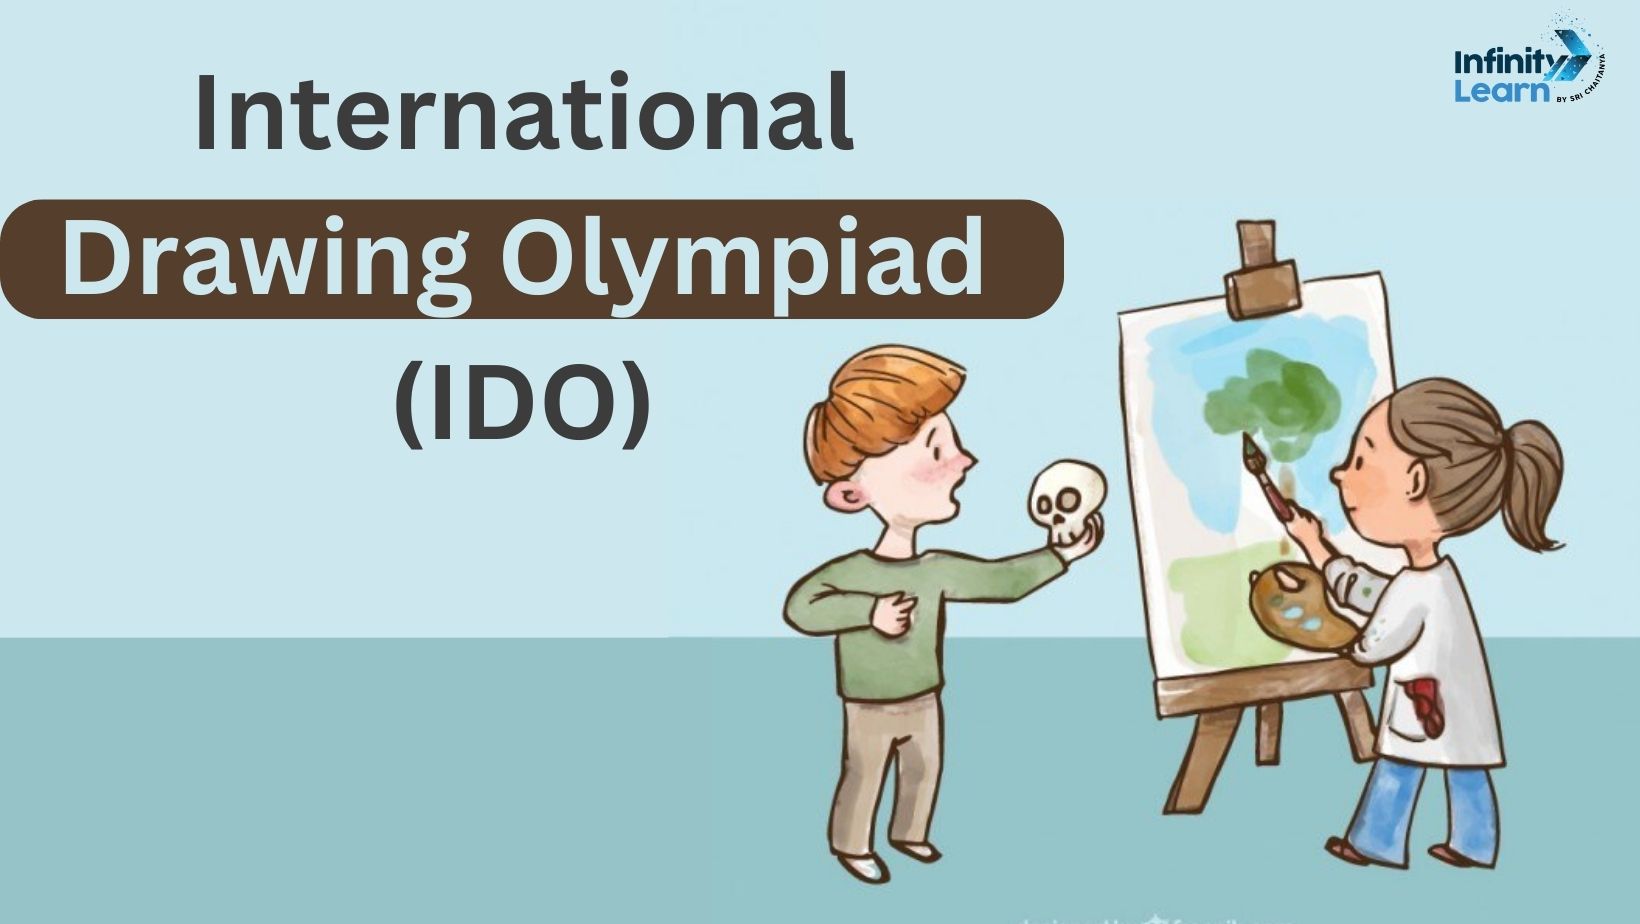 International Drawing Olympiad (IDO)